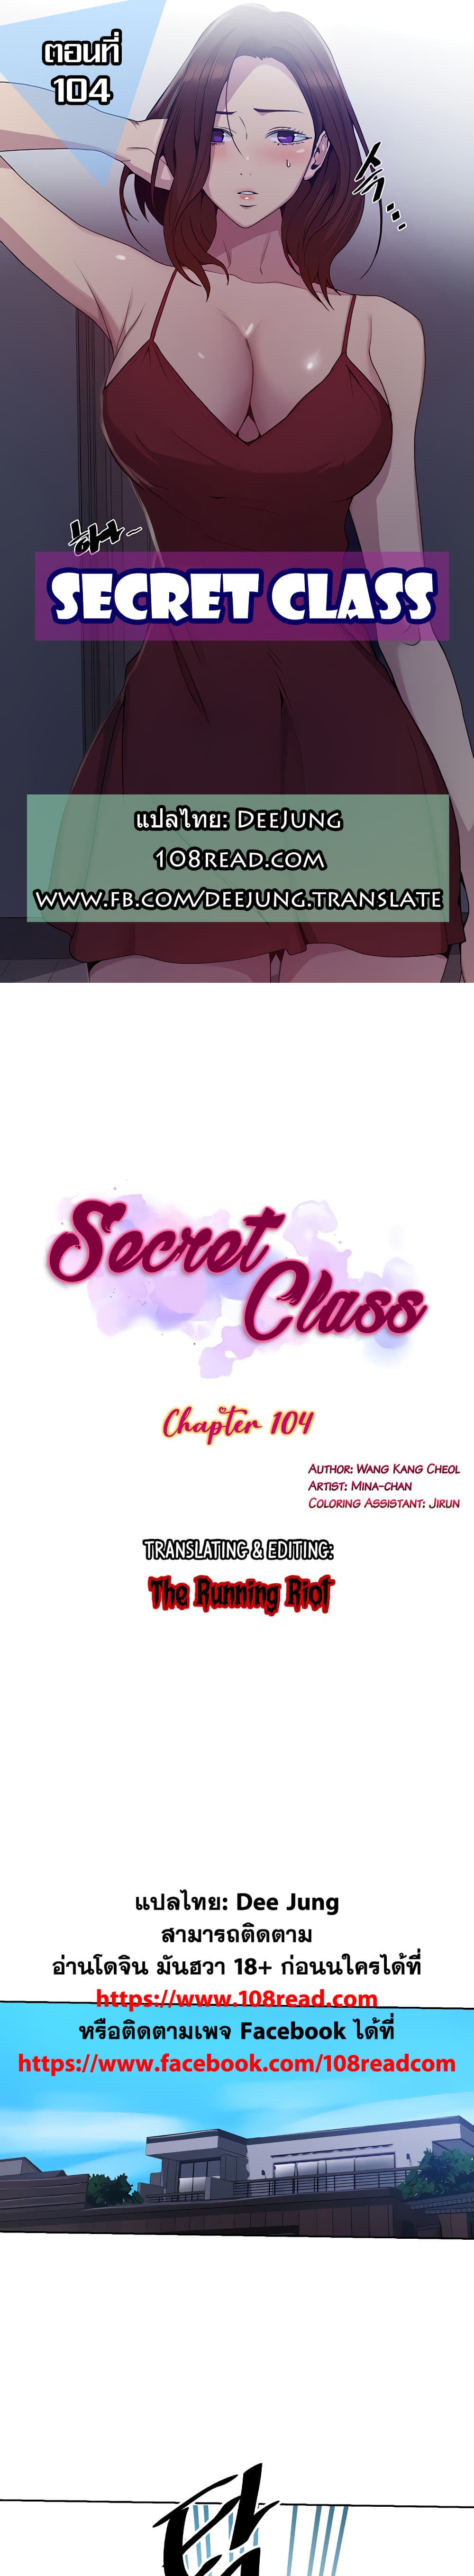 Secret Class 104 (1)